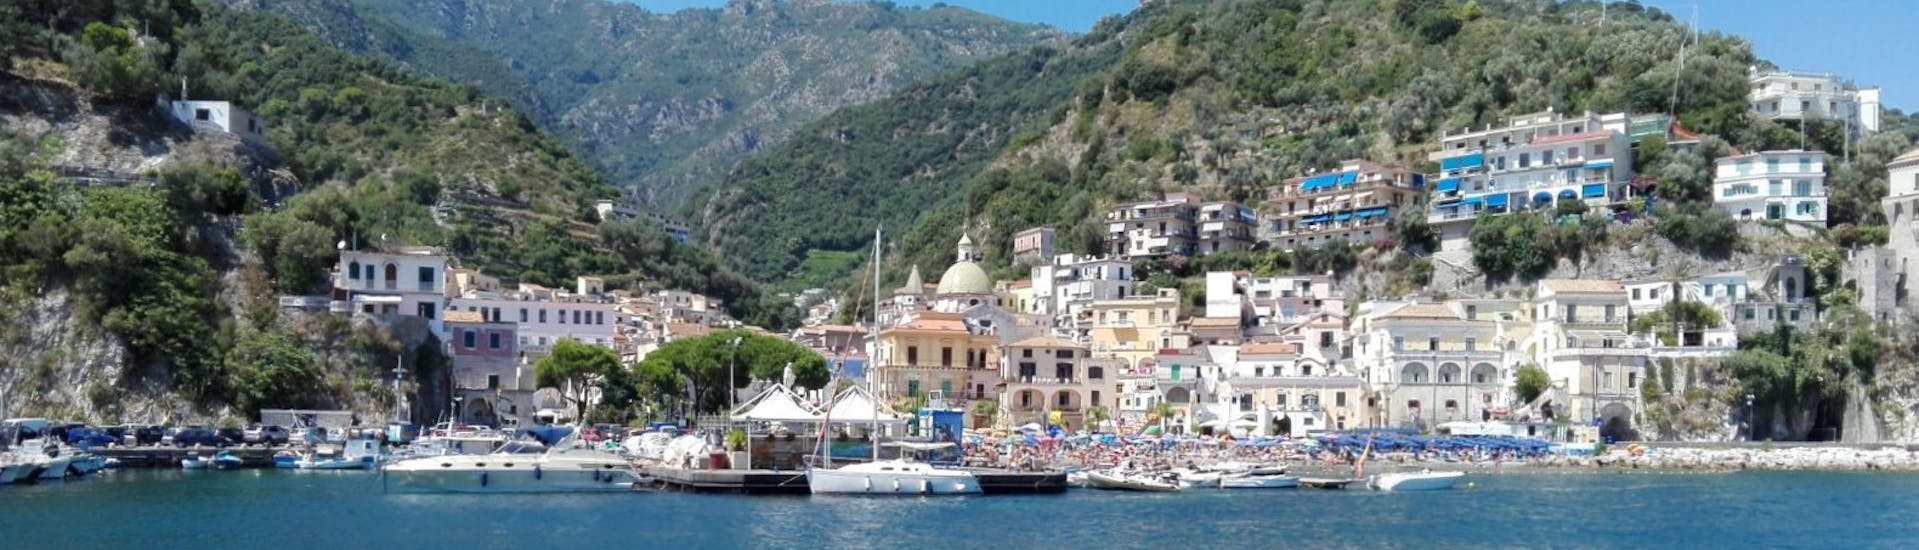 Die sorrentinische Küste vom Boot aus gesehen während der privaten Bootstour von Sorrent nach Capri und Positano mit Aperitif und Schnorcheln.